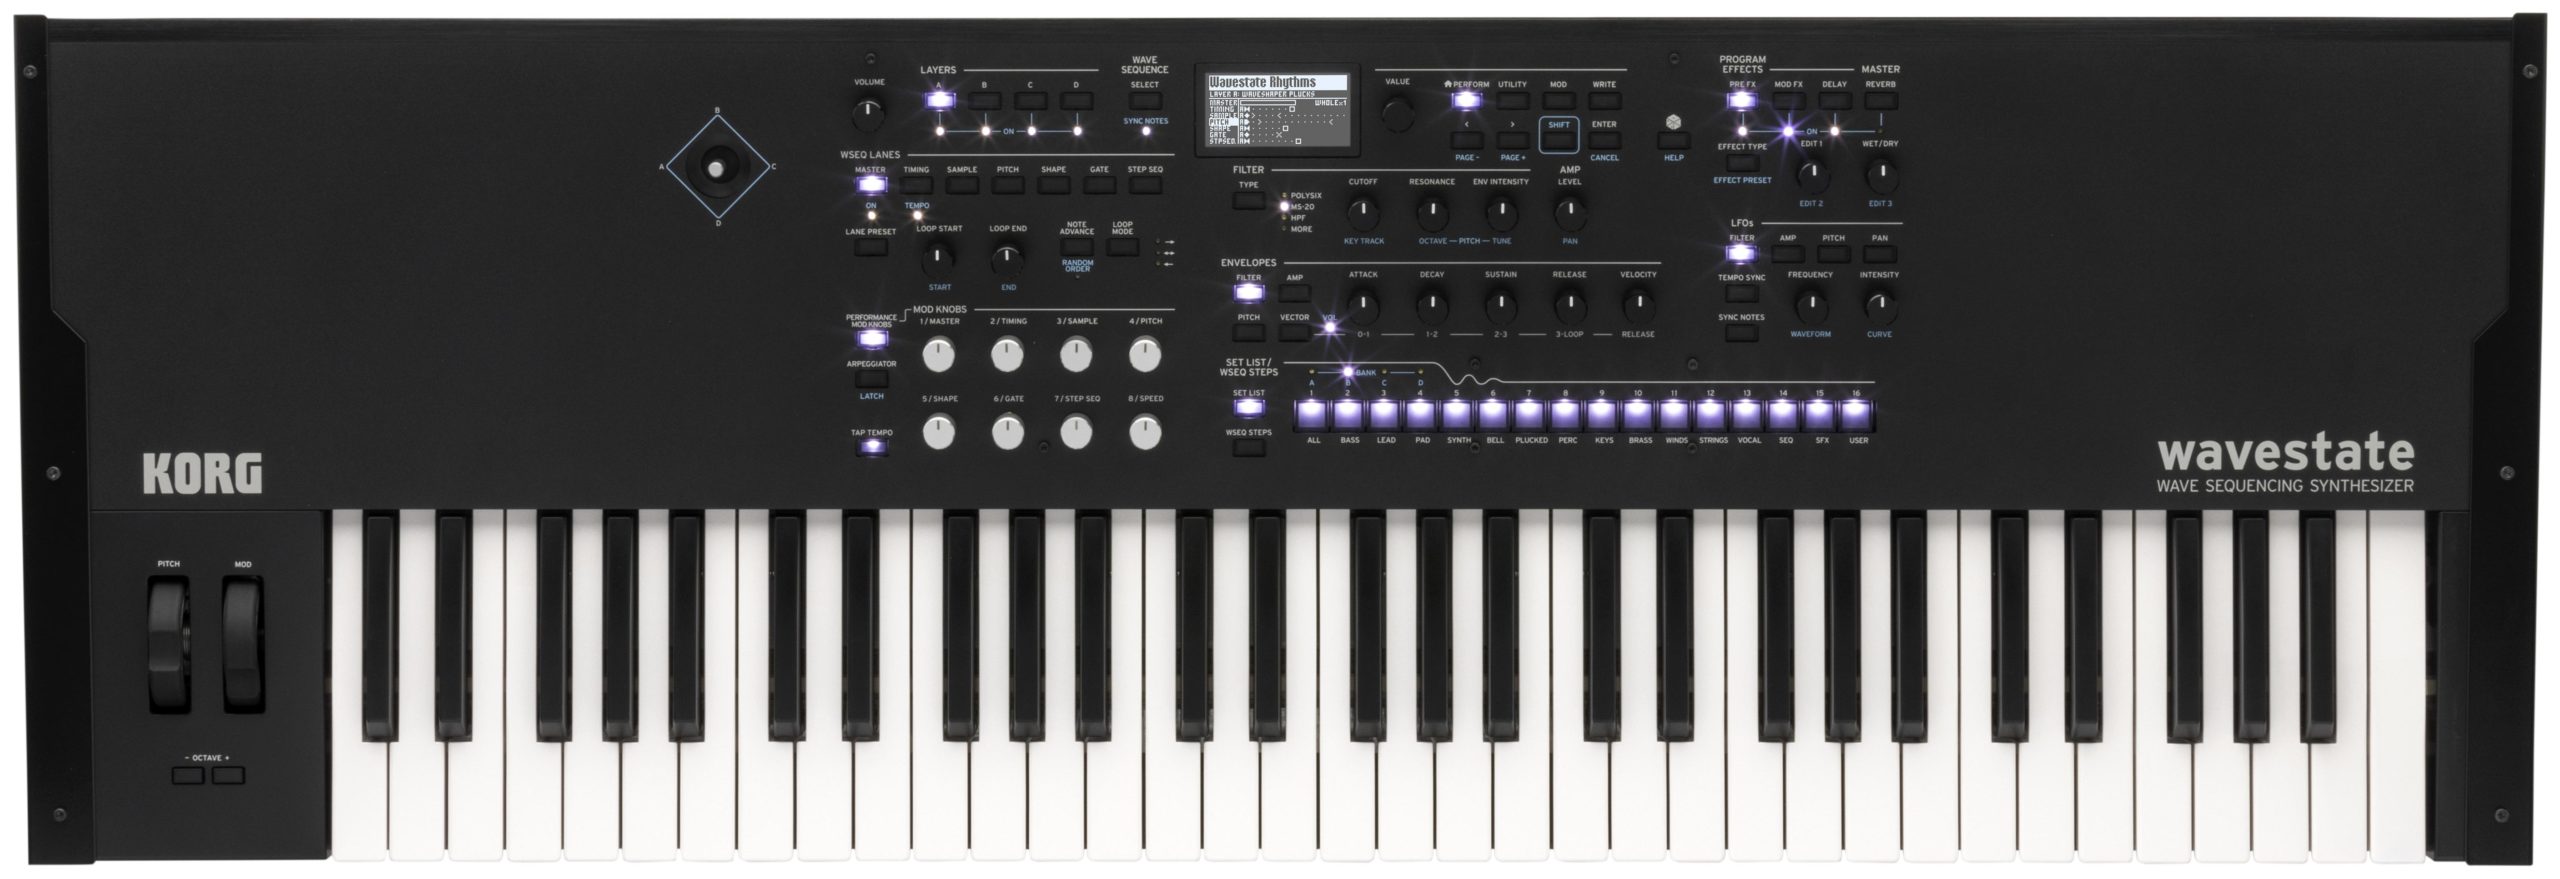 El panel frontal en aluminio cepillado negro de Korg wavestate SE -con teclado de sensación natural de la marca, compatible con postpulsación (aftertouch)